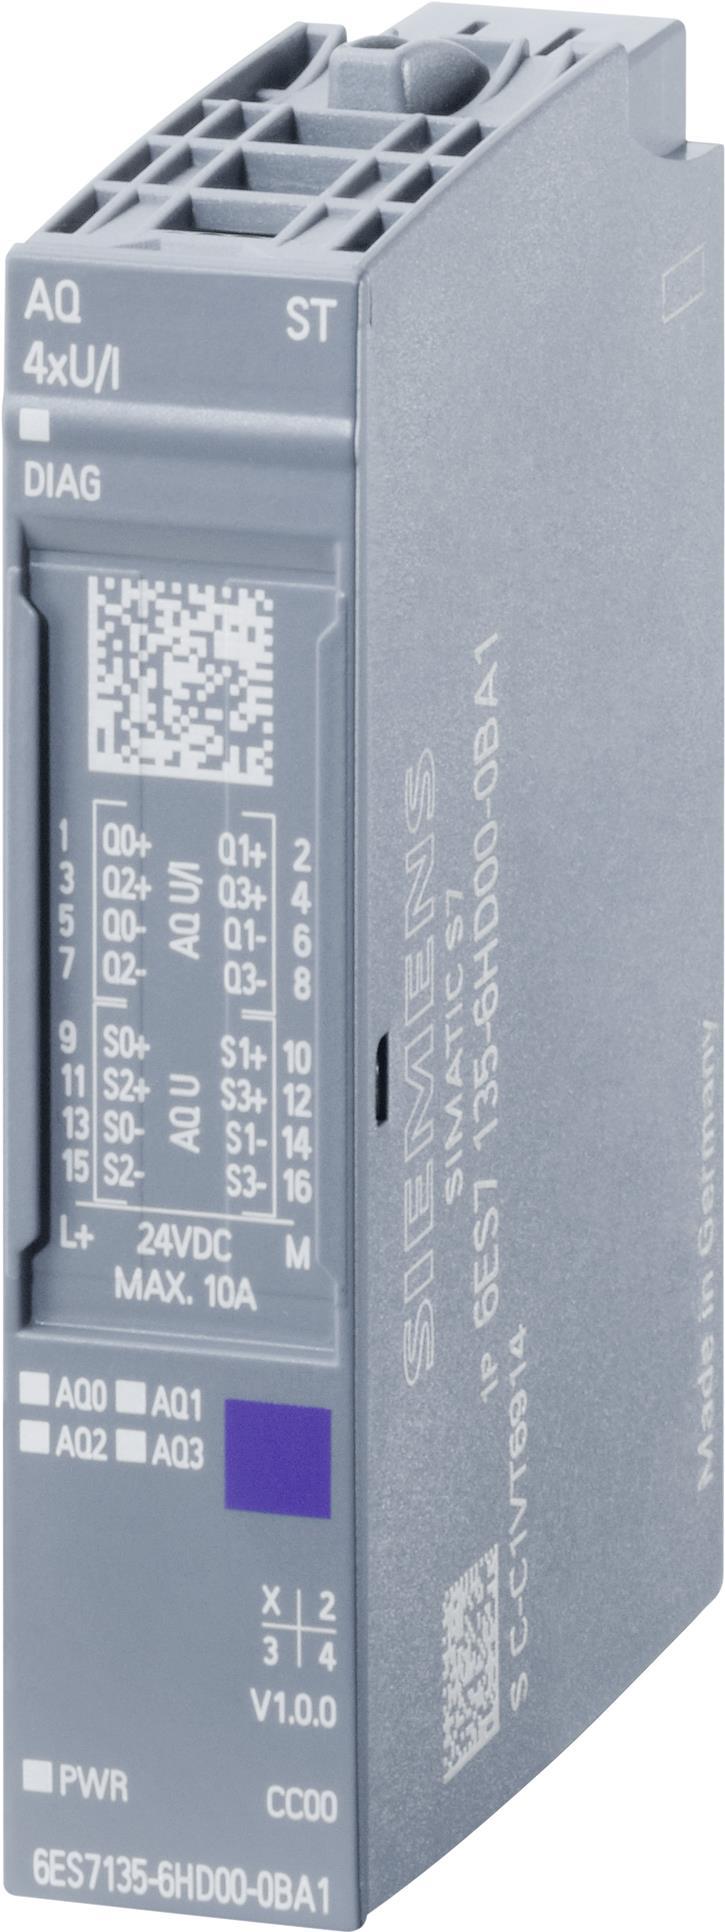 Siemens 6ES7135-6HD00-0BA1 Digital & Analog I/O Modul (6ES7135-6HD00-0BA1) - Sonderposten von Siemens